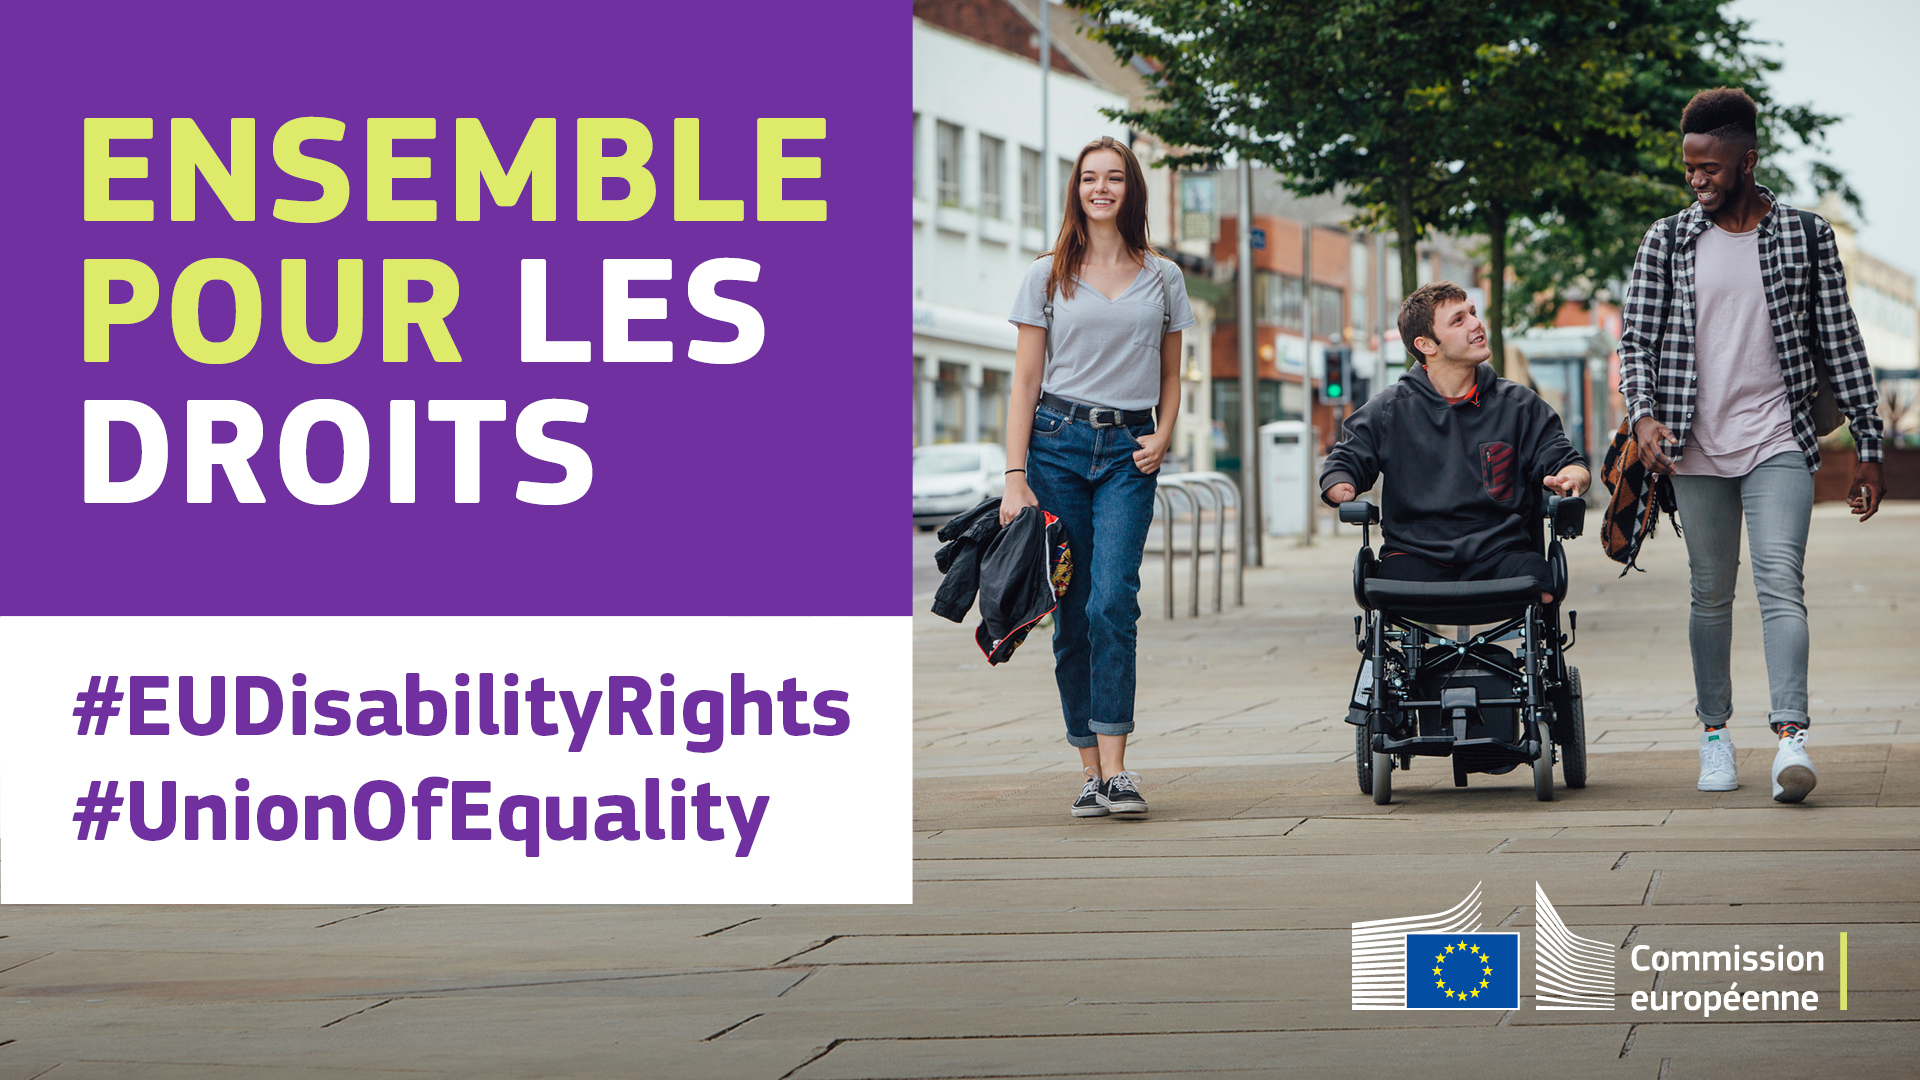 Trois jeunes gens se promènent dans la ville. L’un d’eux est en fauteuil roulant. Texte disant: ensemble pour les droits, #EUDisabilityRights, #UnionOfEquality.